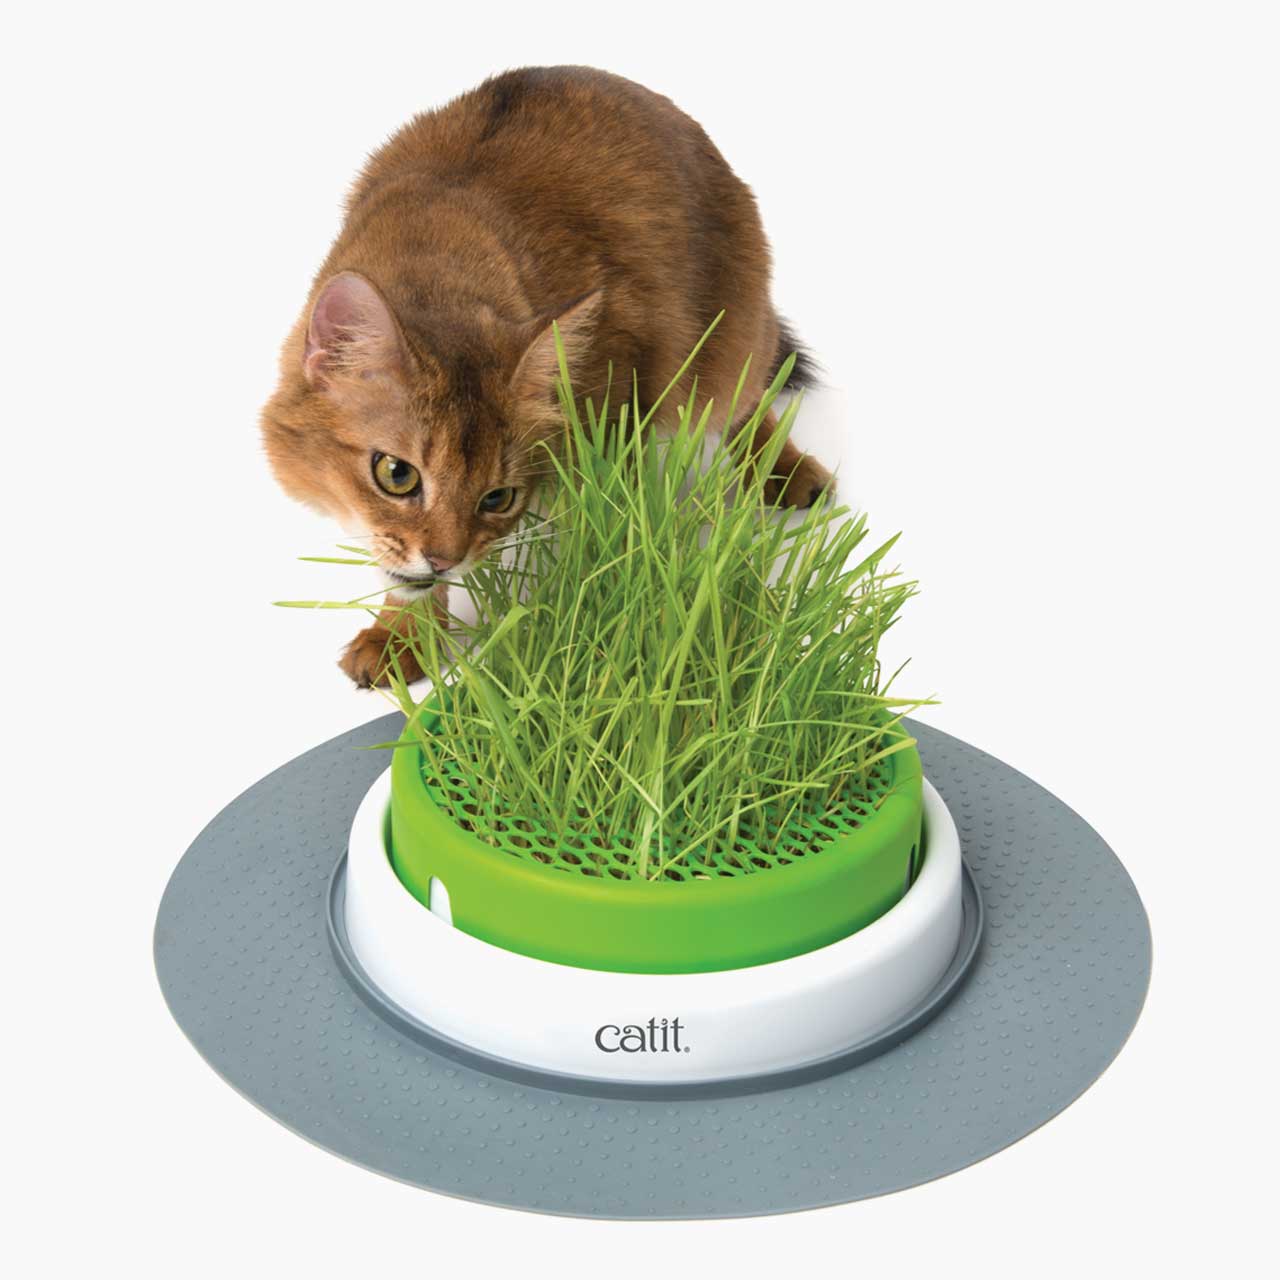 Gato masticando hierba en el Grass Planter